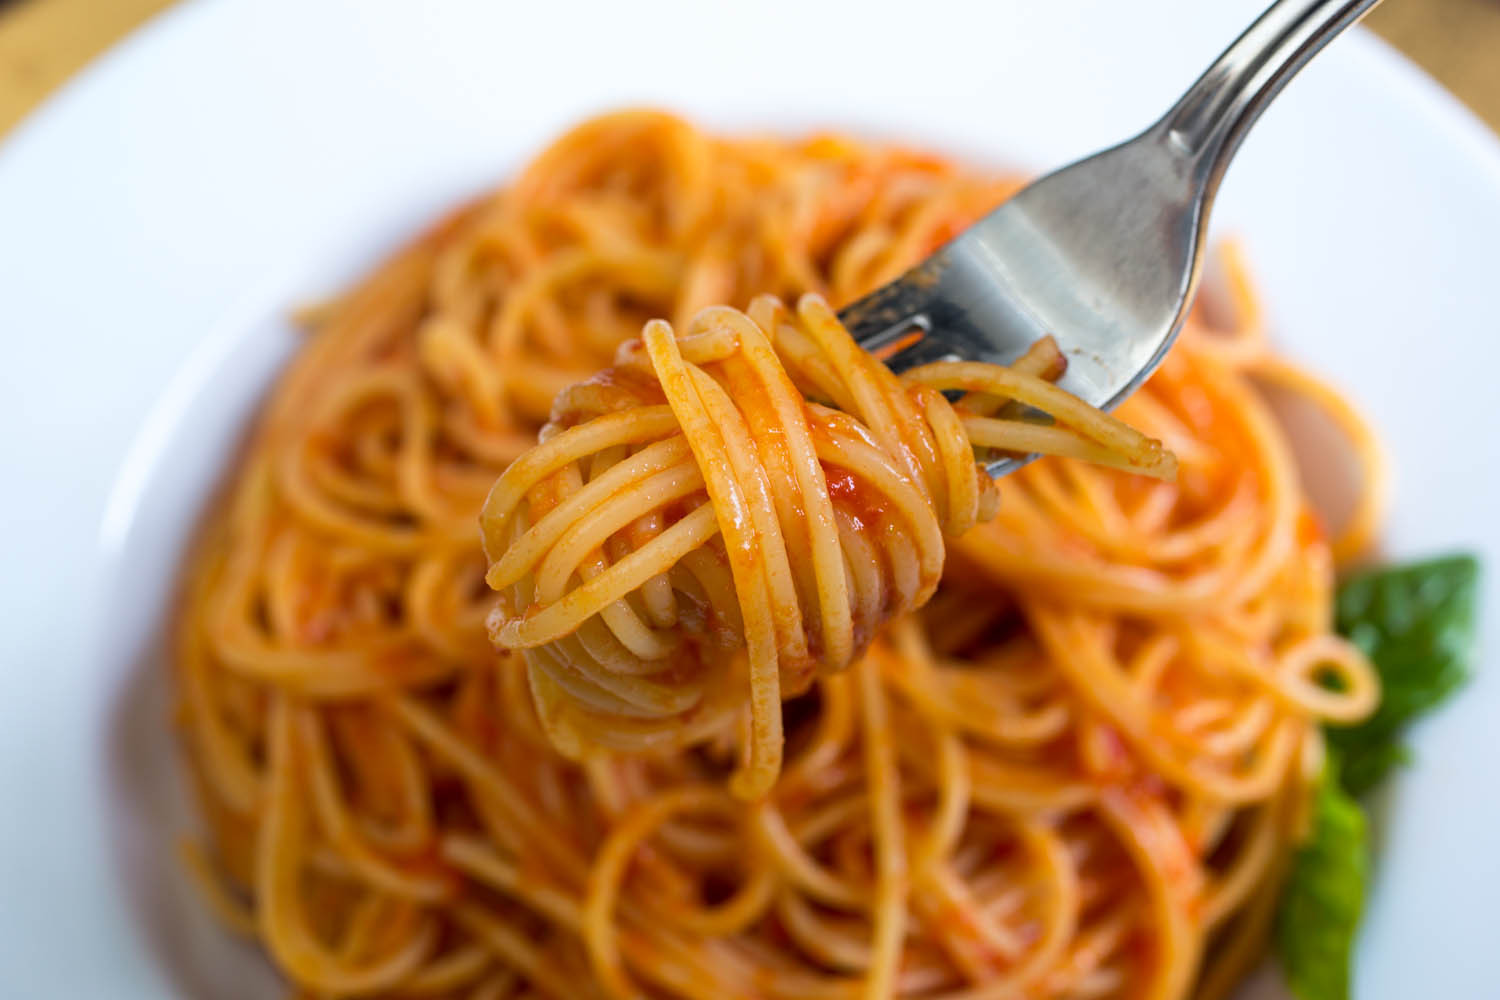 How To Make Spaghetti Sauce With Tomato Paste
 How to Make the Best Tomato Sauce From Fresh Tomatoes